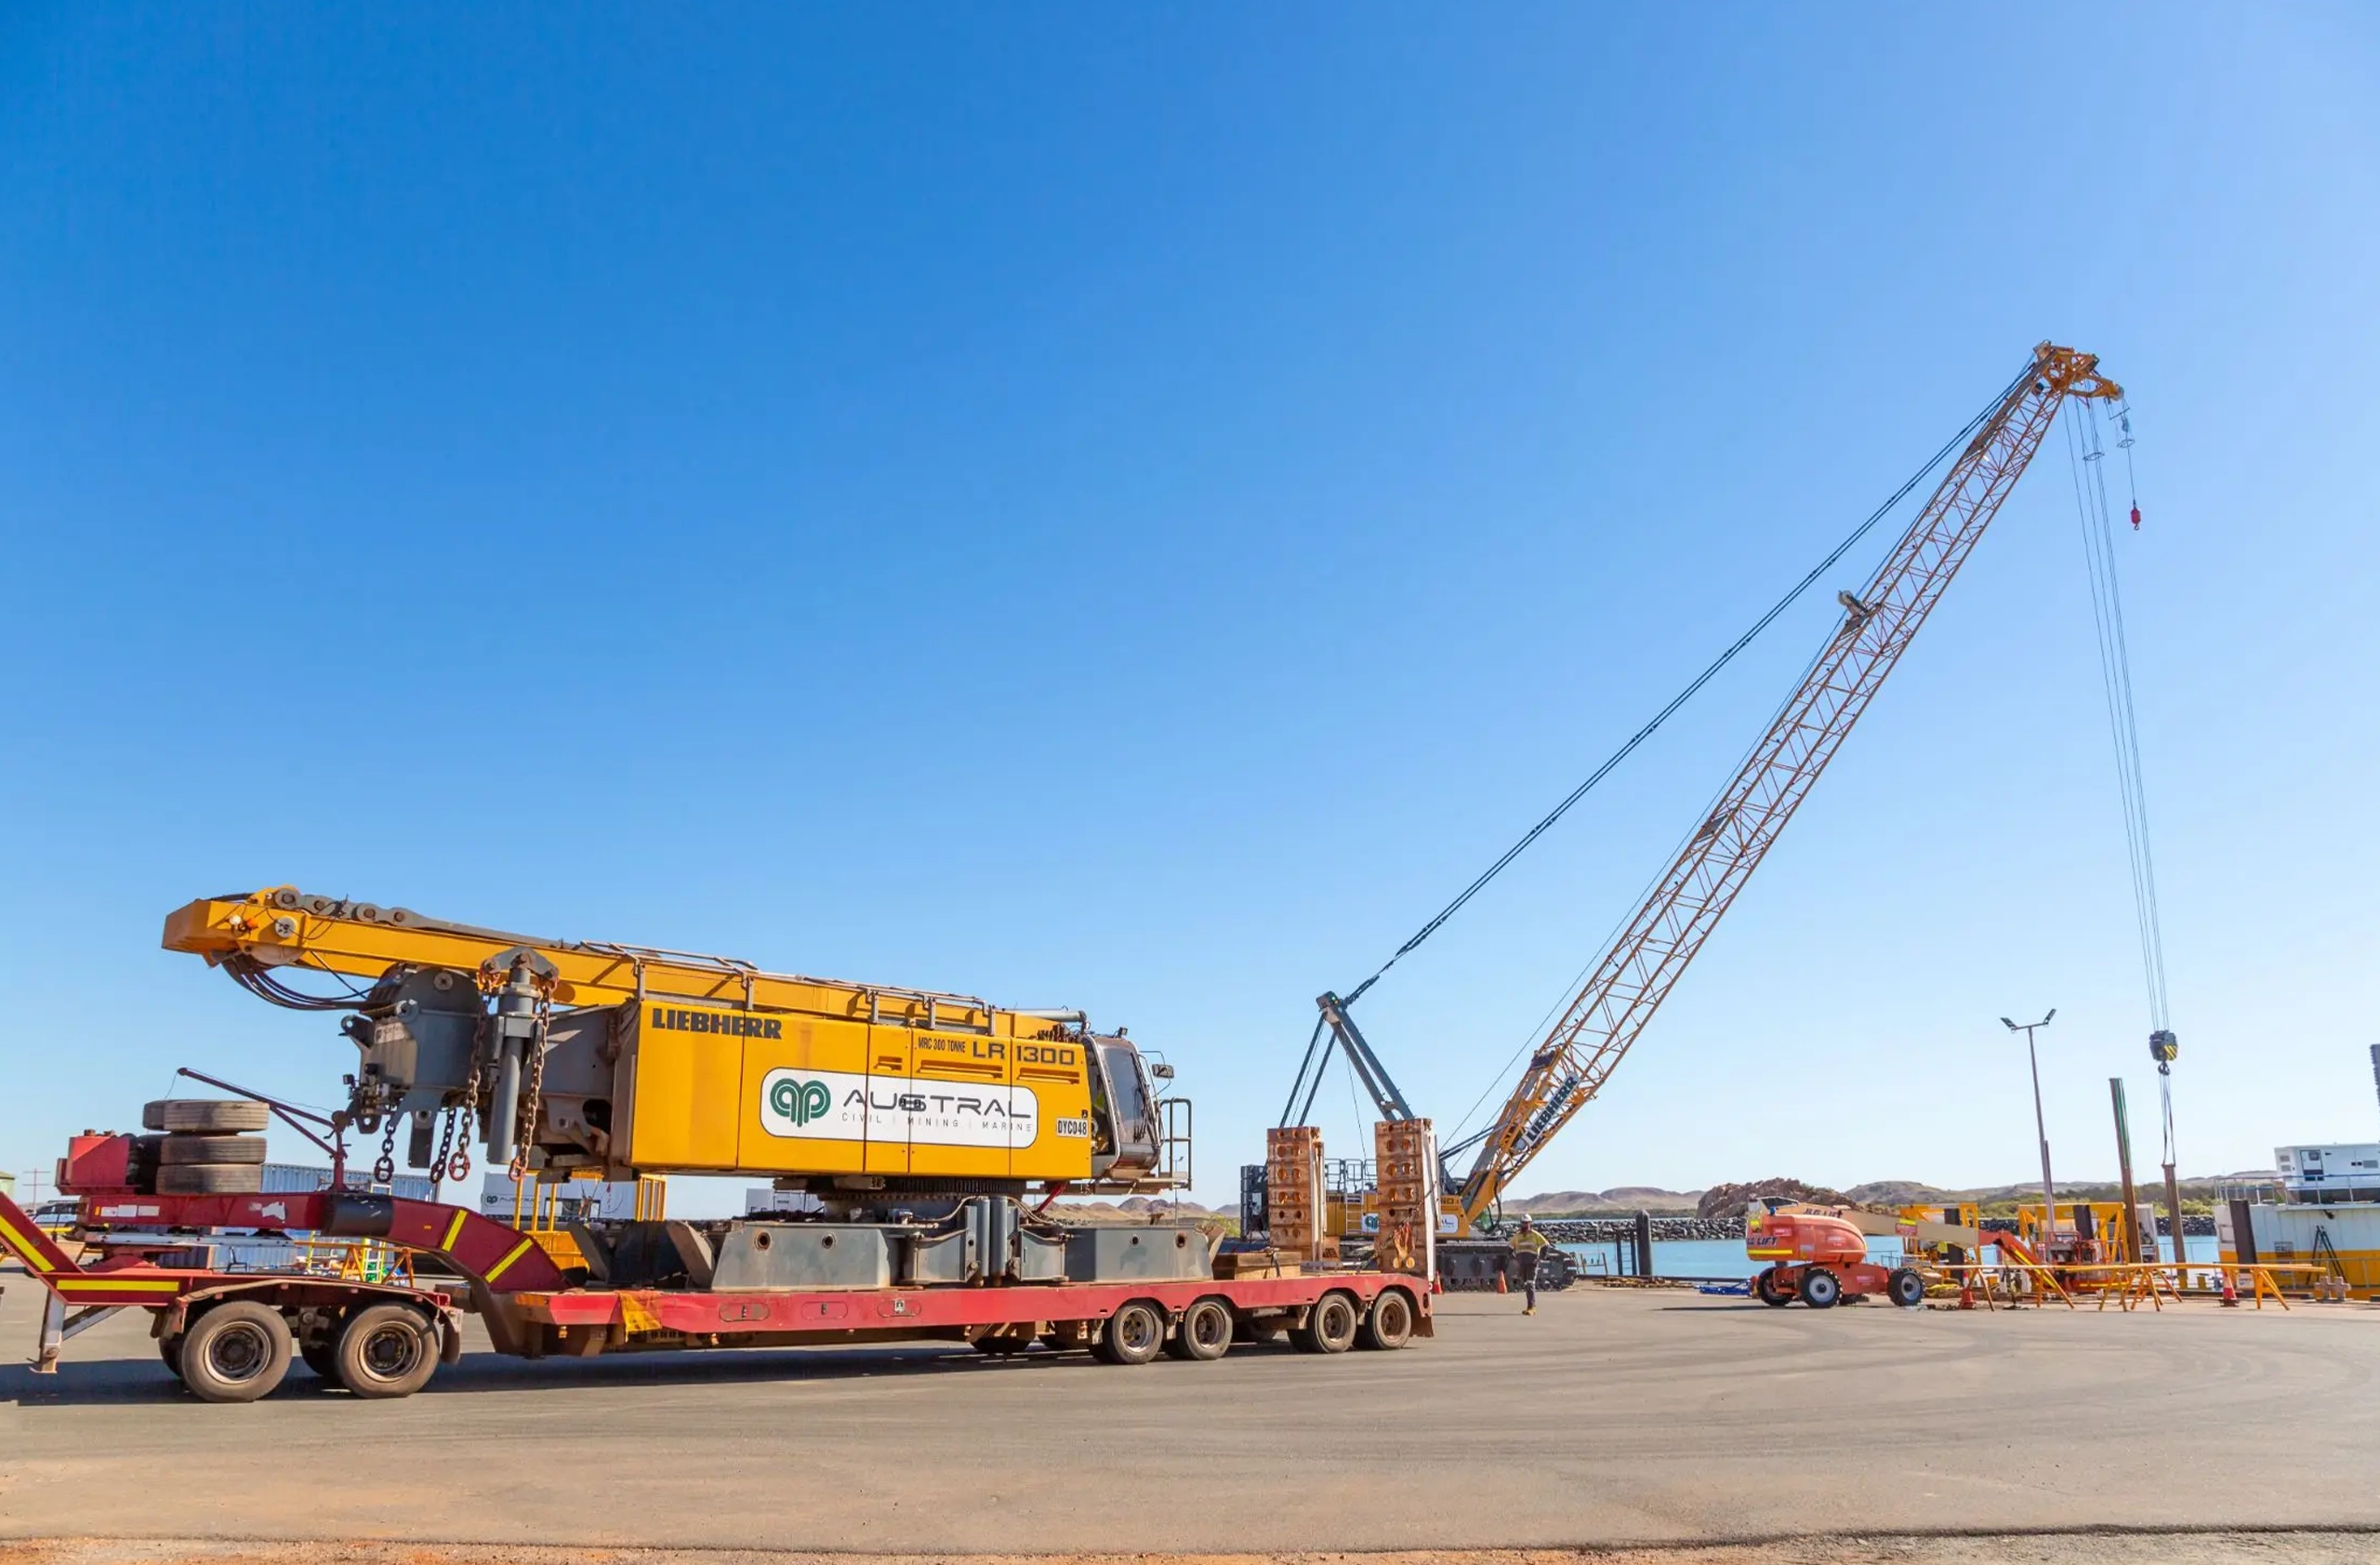 A big Austral's crane